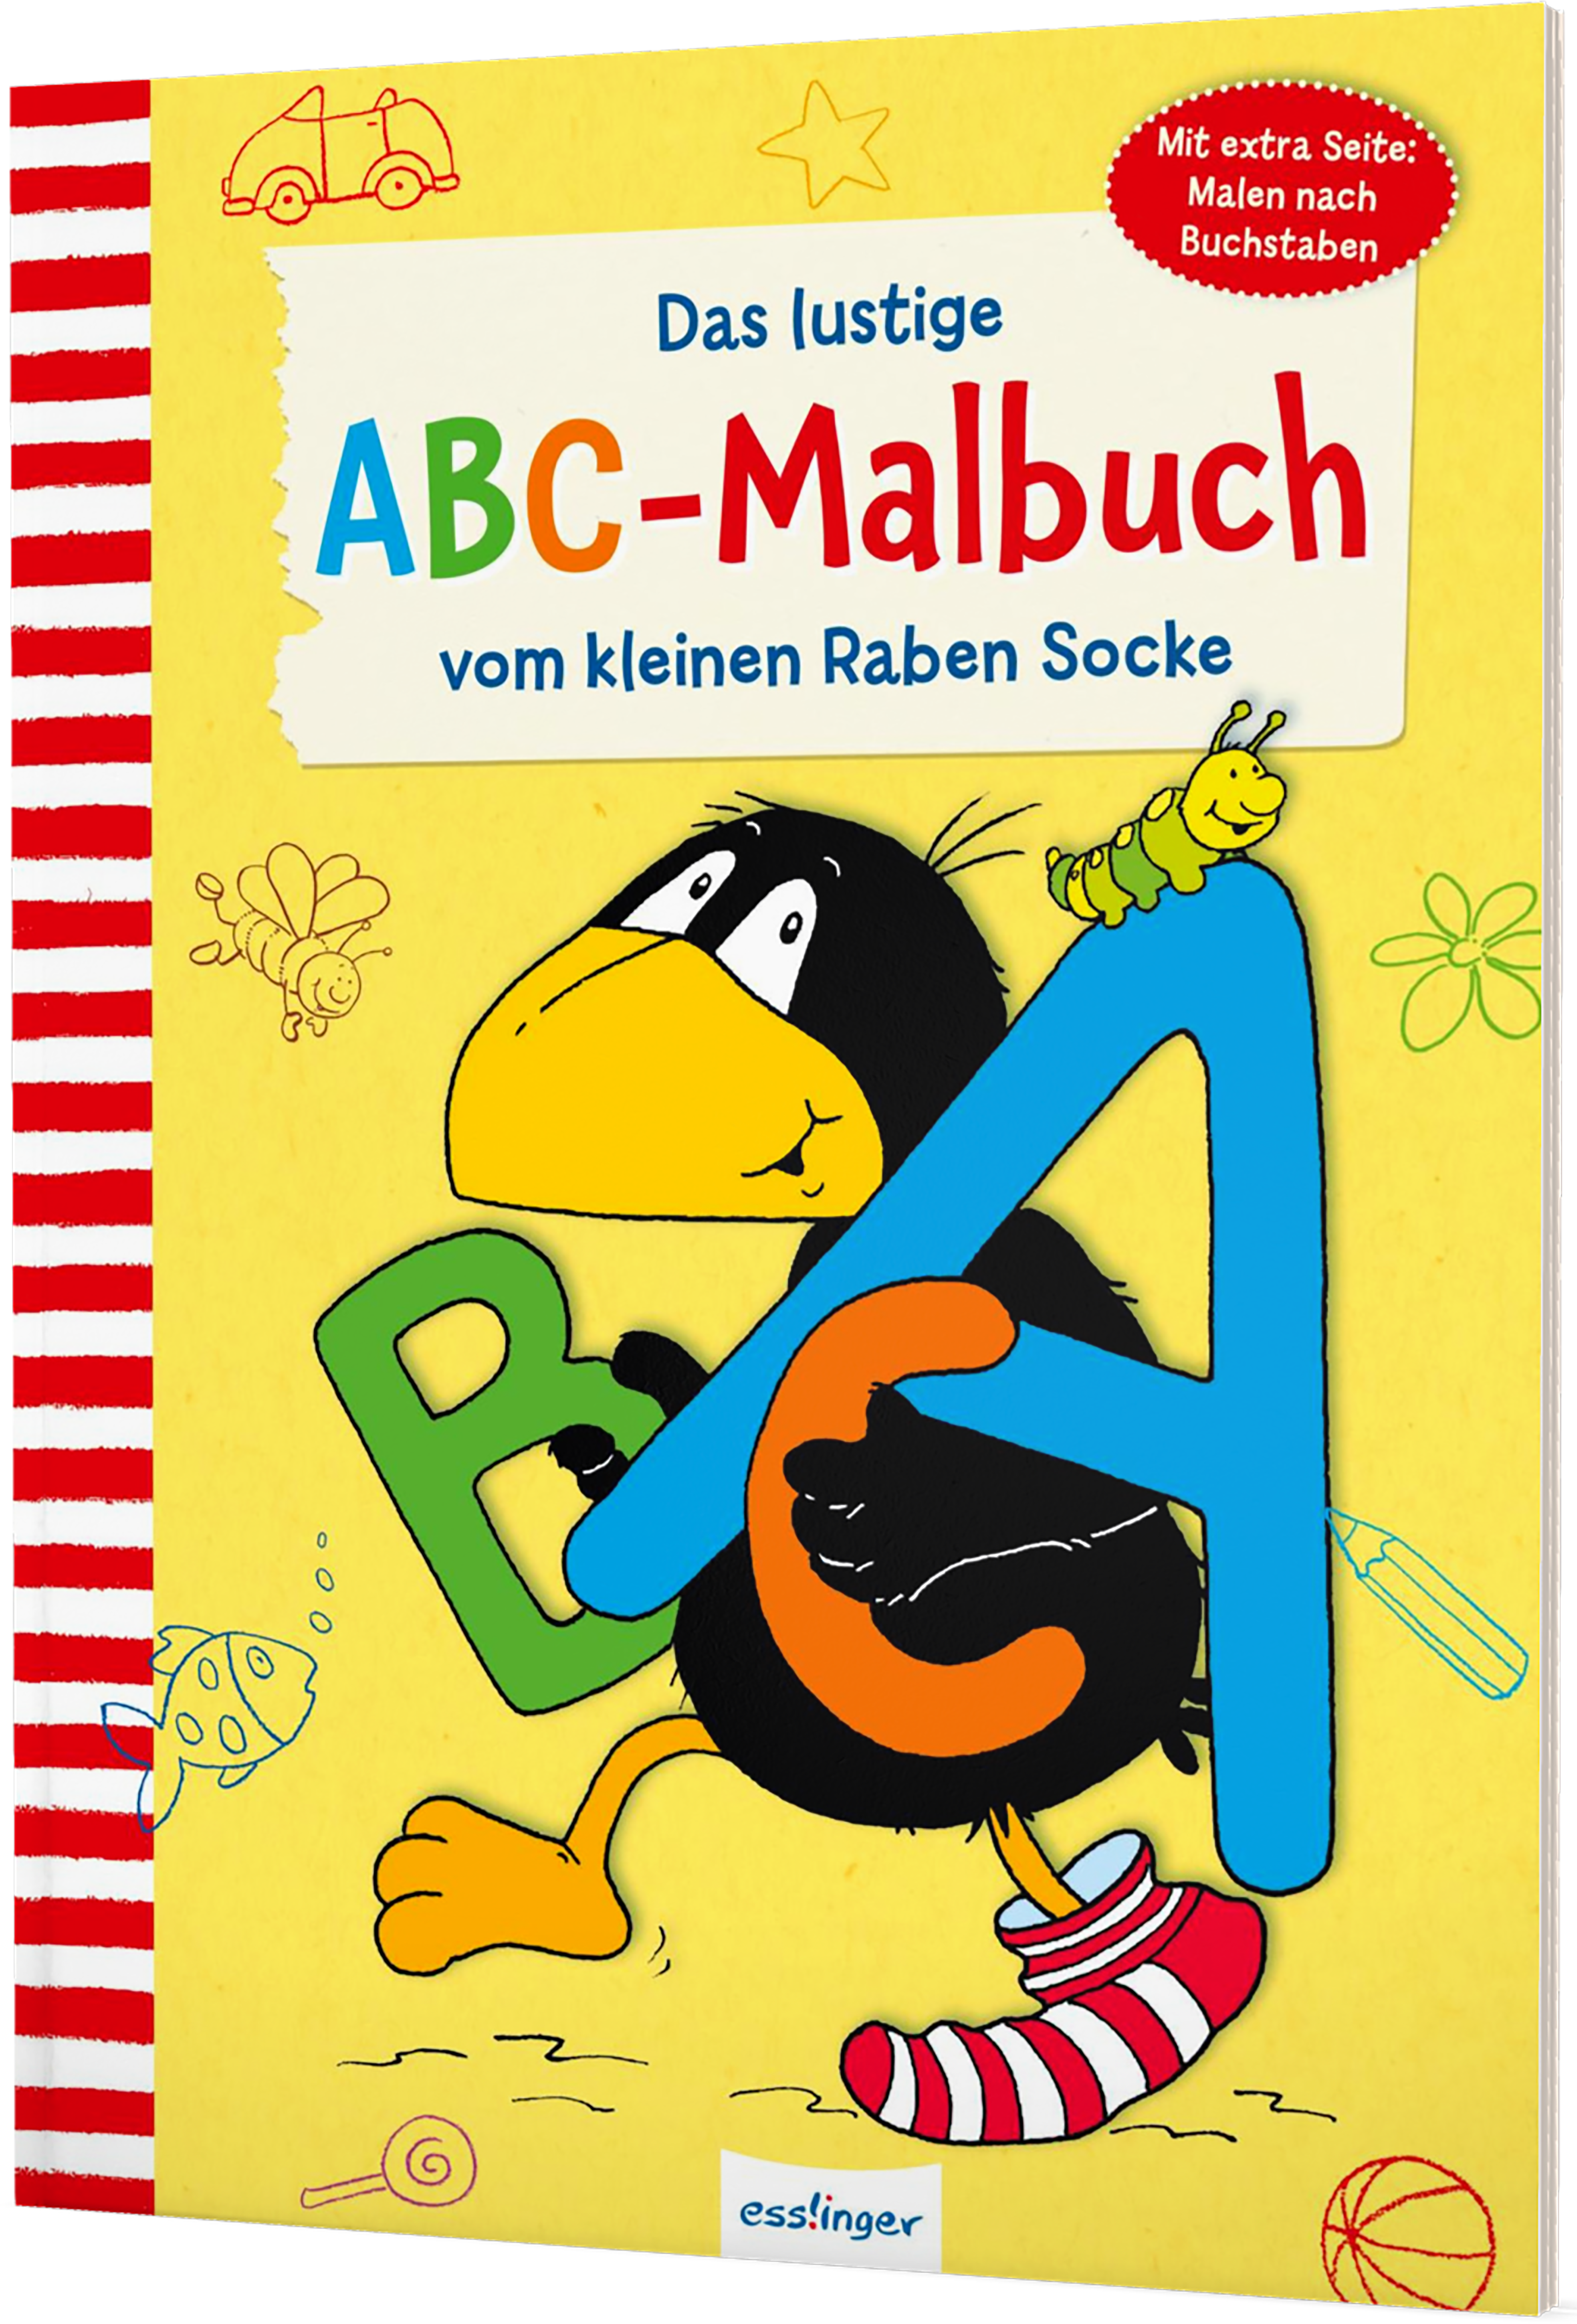 Das lustige ABC Malbuch vom kleinen Raben Socke von Annet Rudolph ...